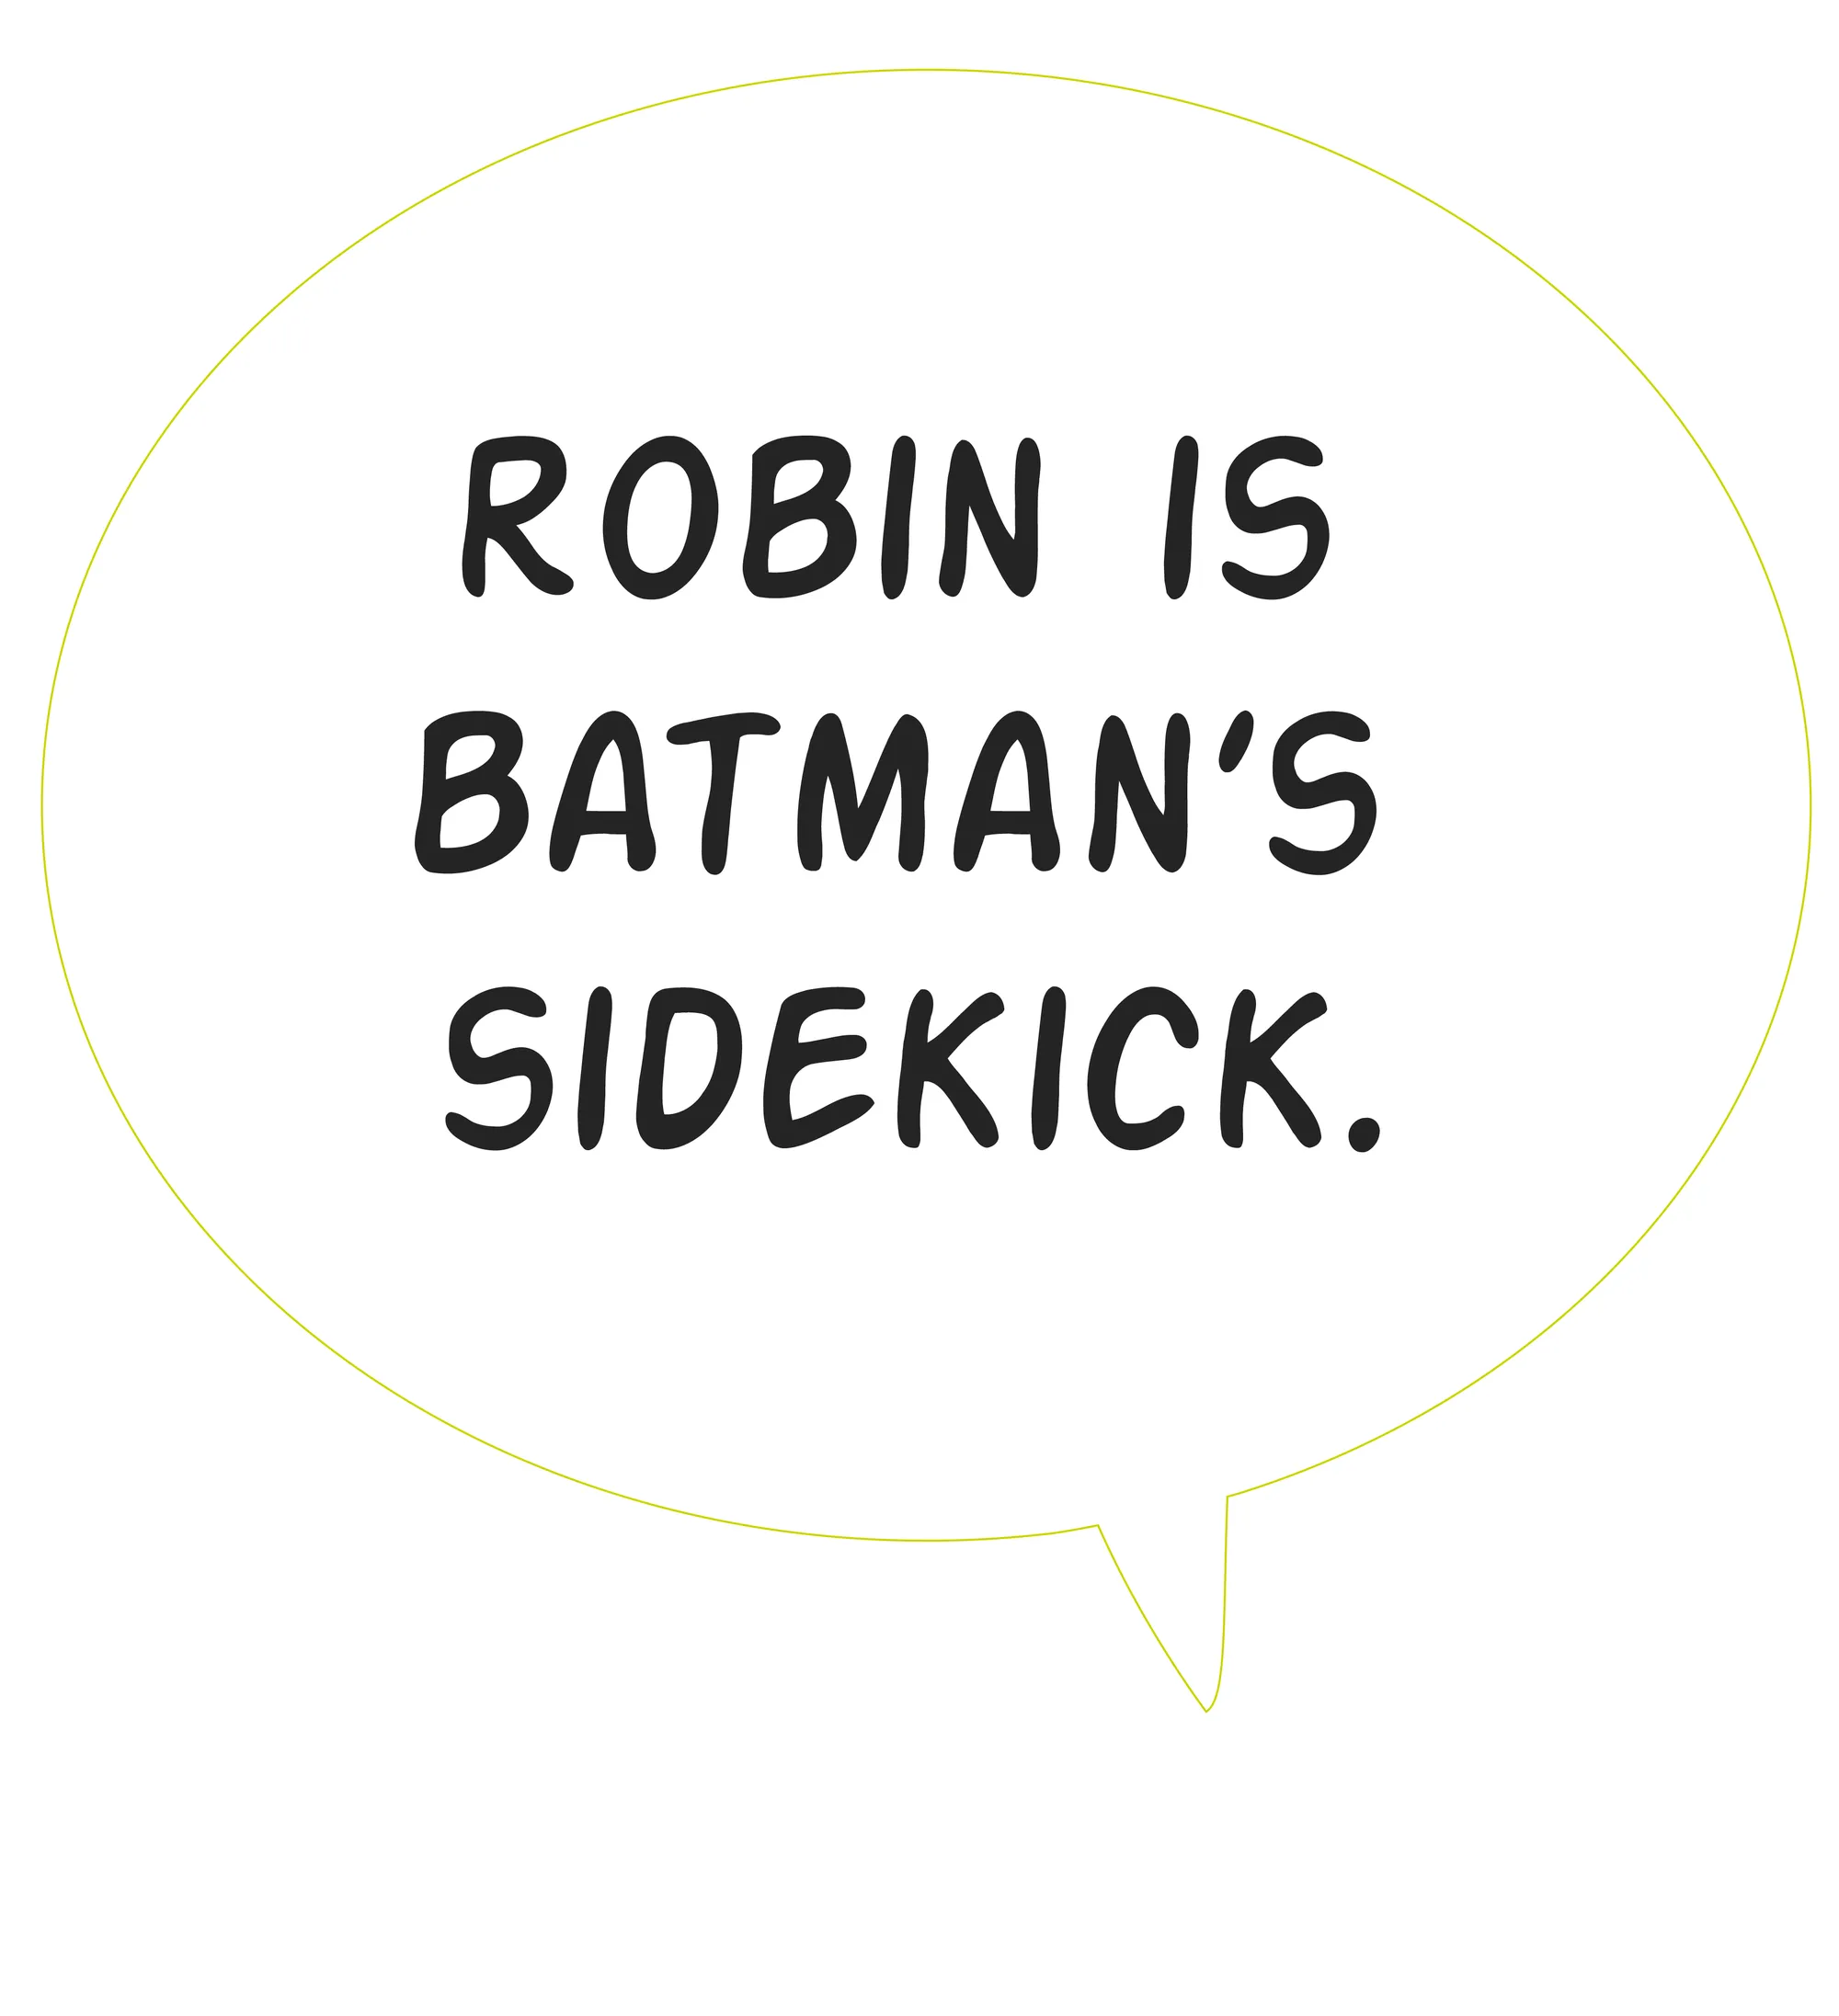 Bulle de BD où il est écrit: Robin is Batman's sidekick